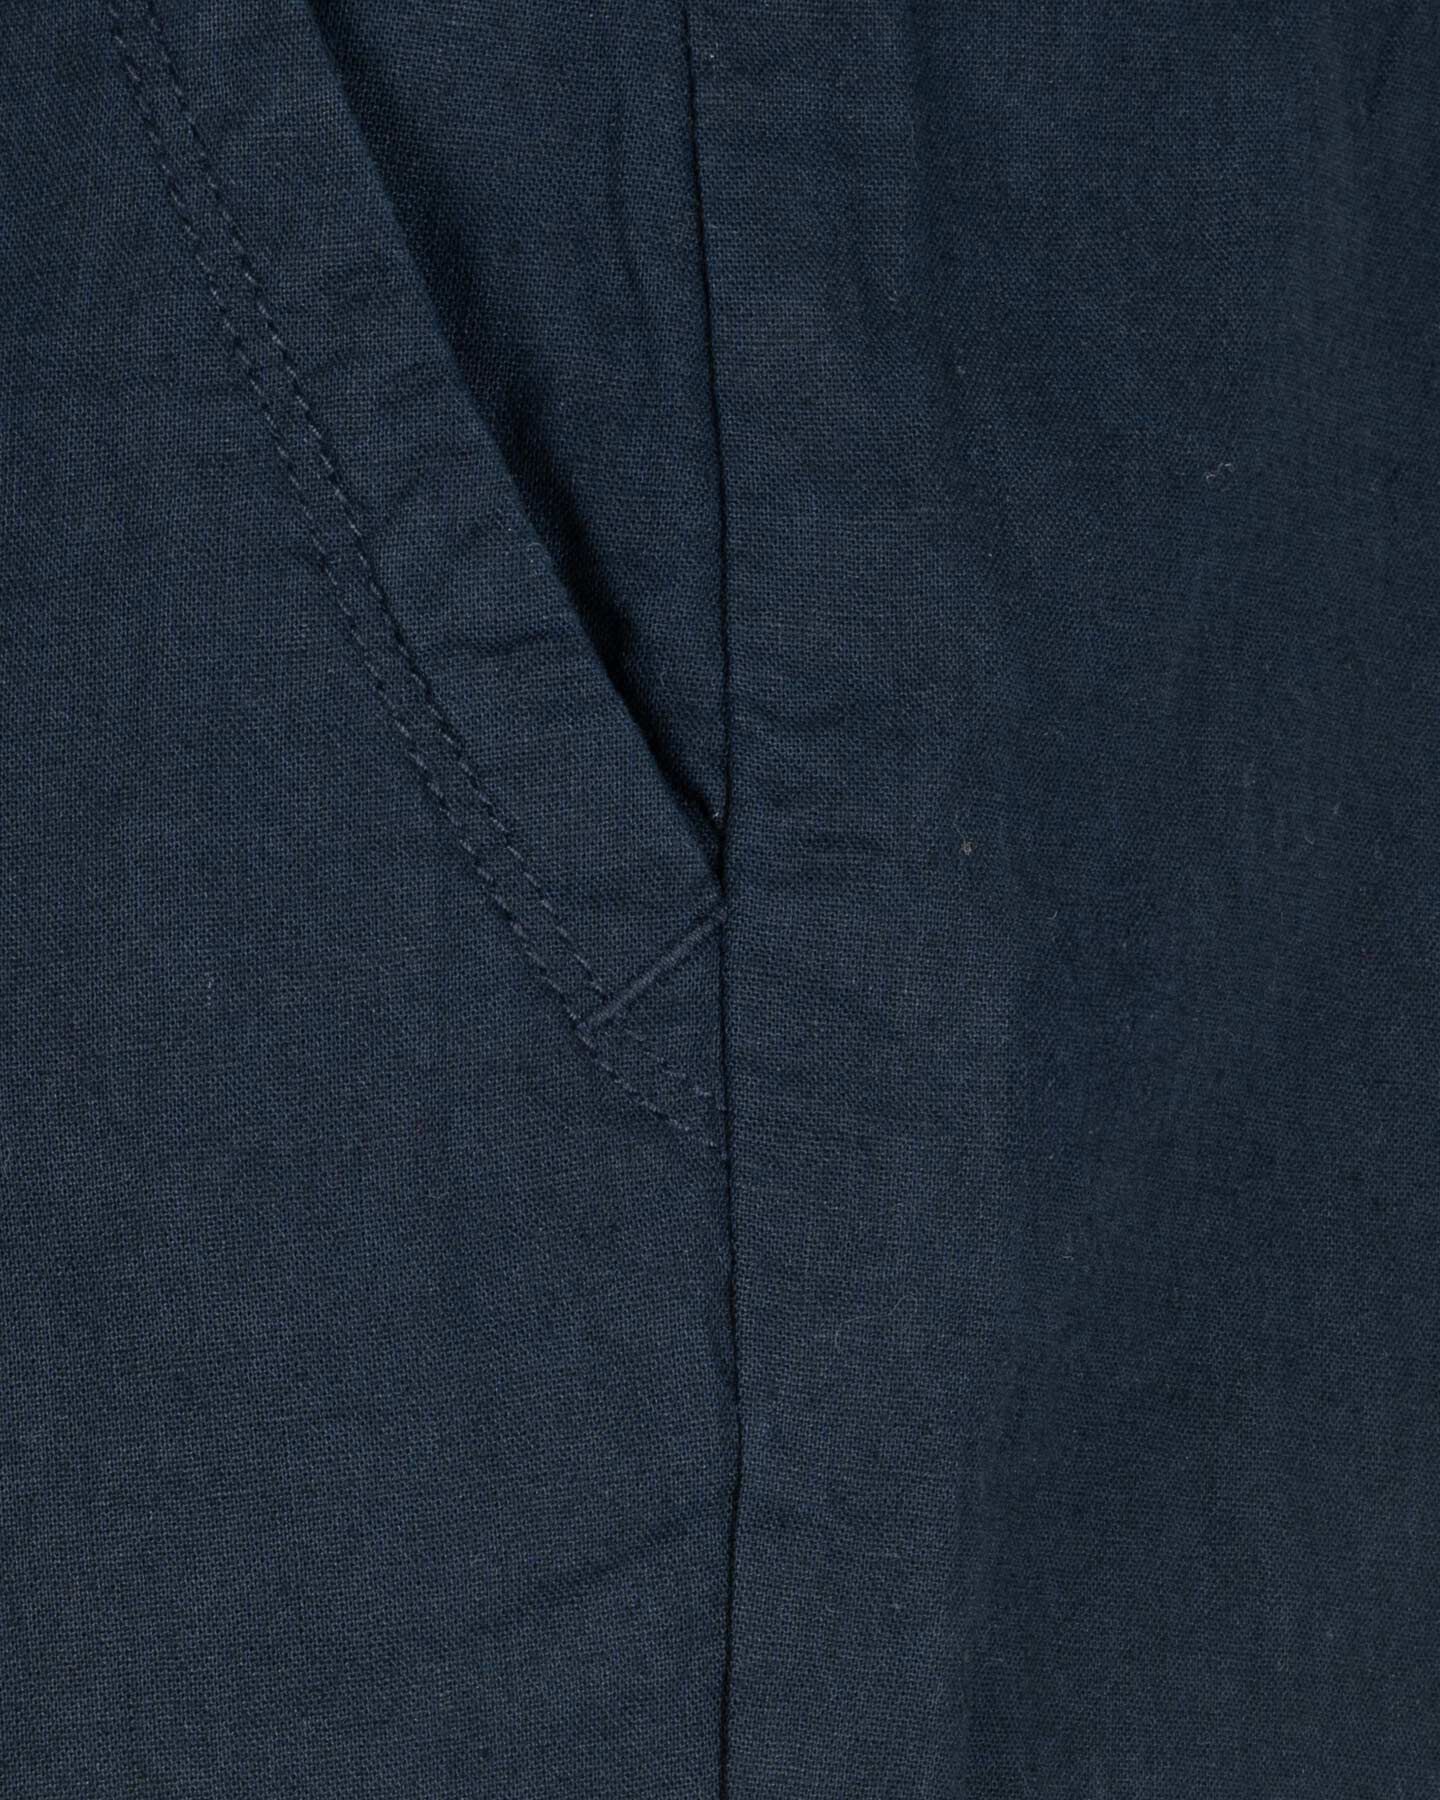  Pantalone DACK'S ESSENTIAL M S4129728|516|M scatto 2